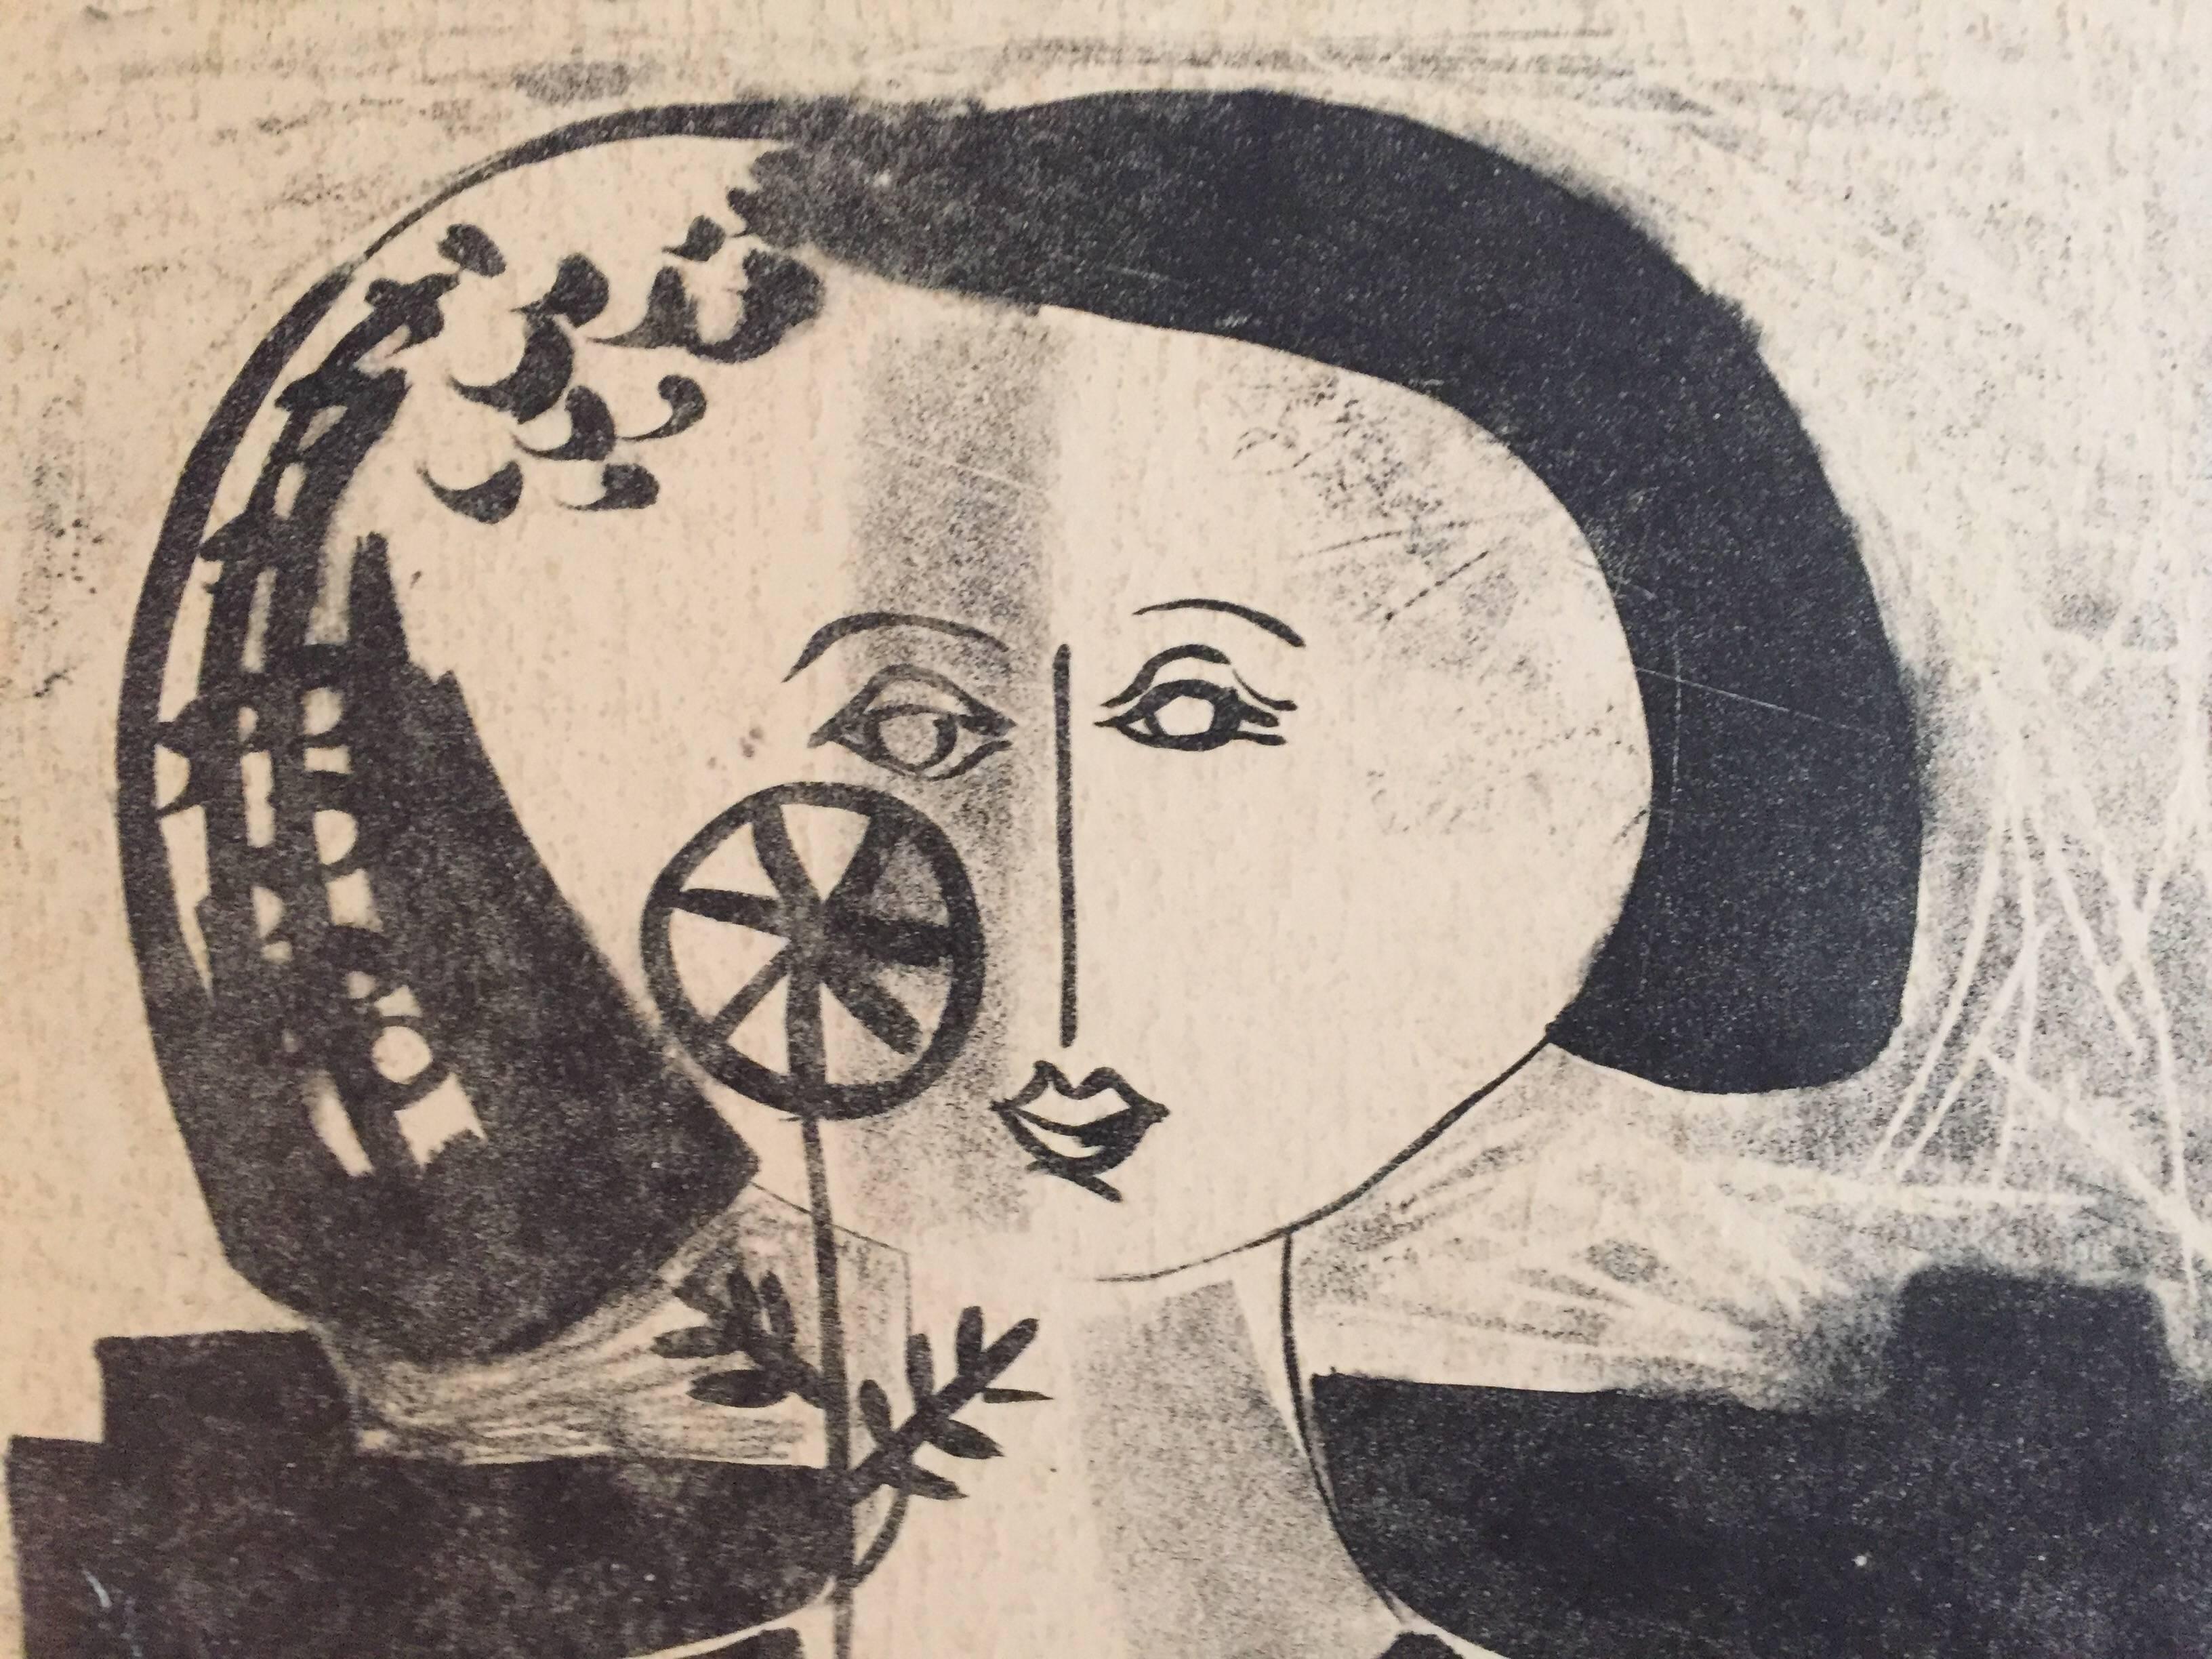 Head of a Women - Print by Ora Lahav Chaaltiel